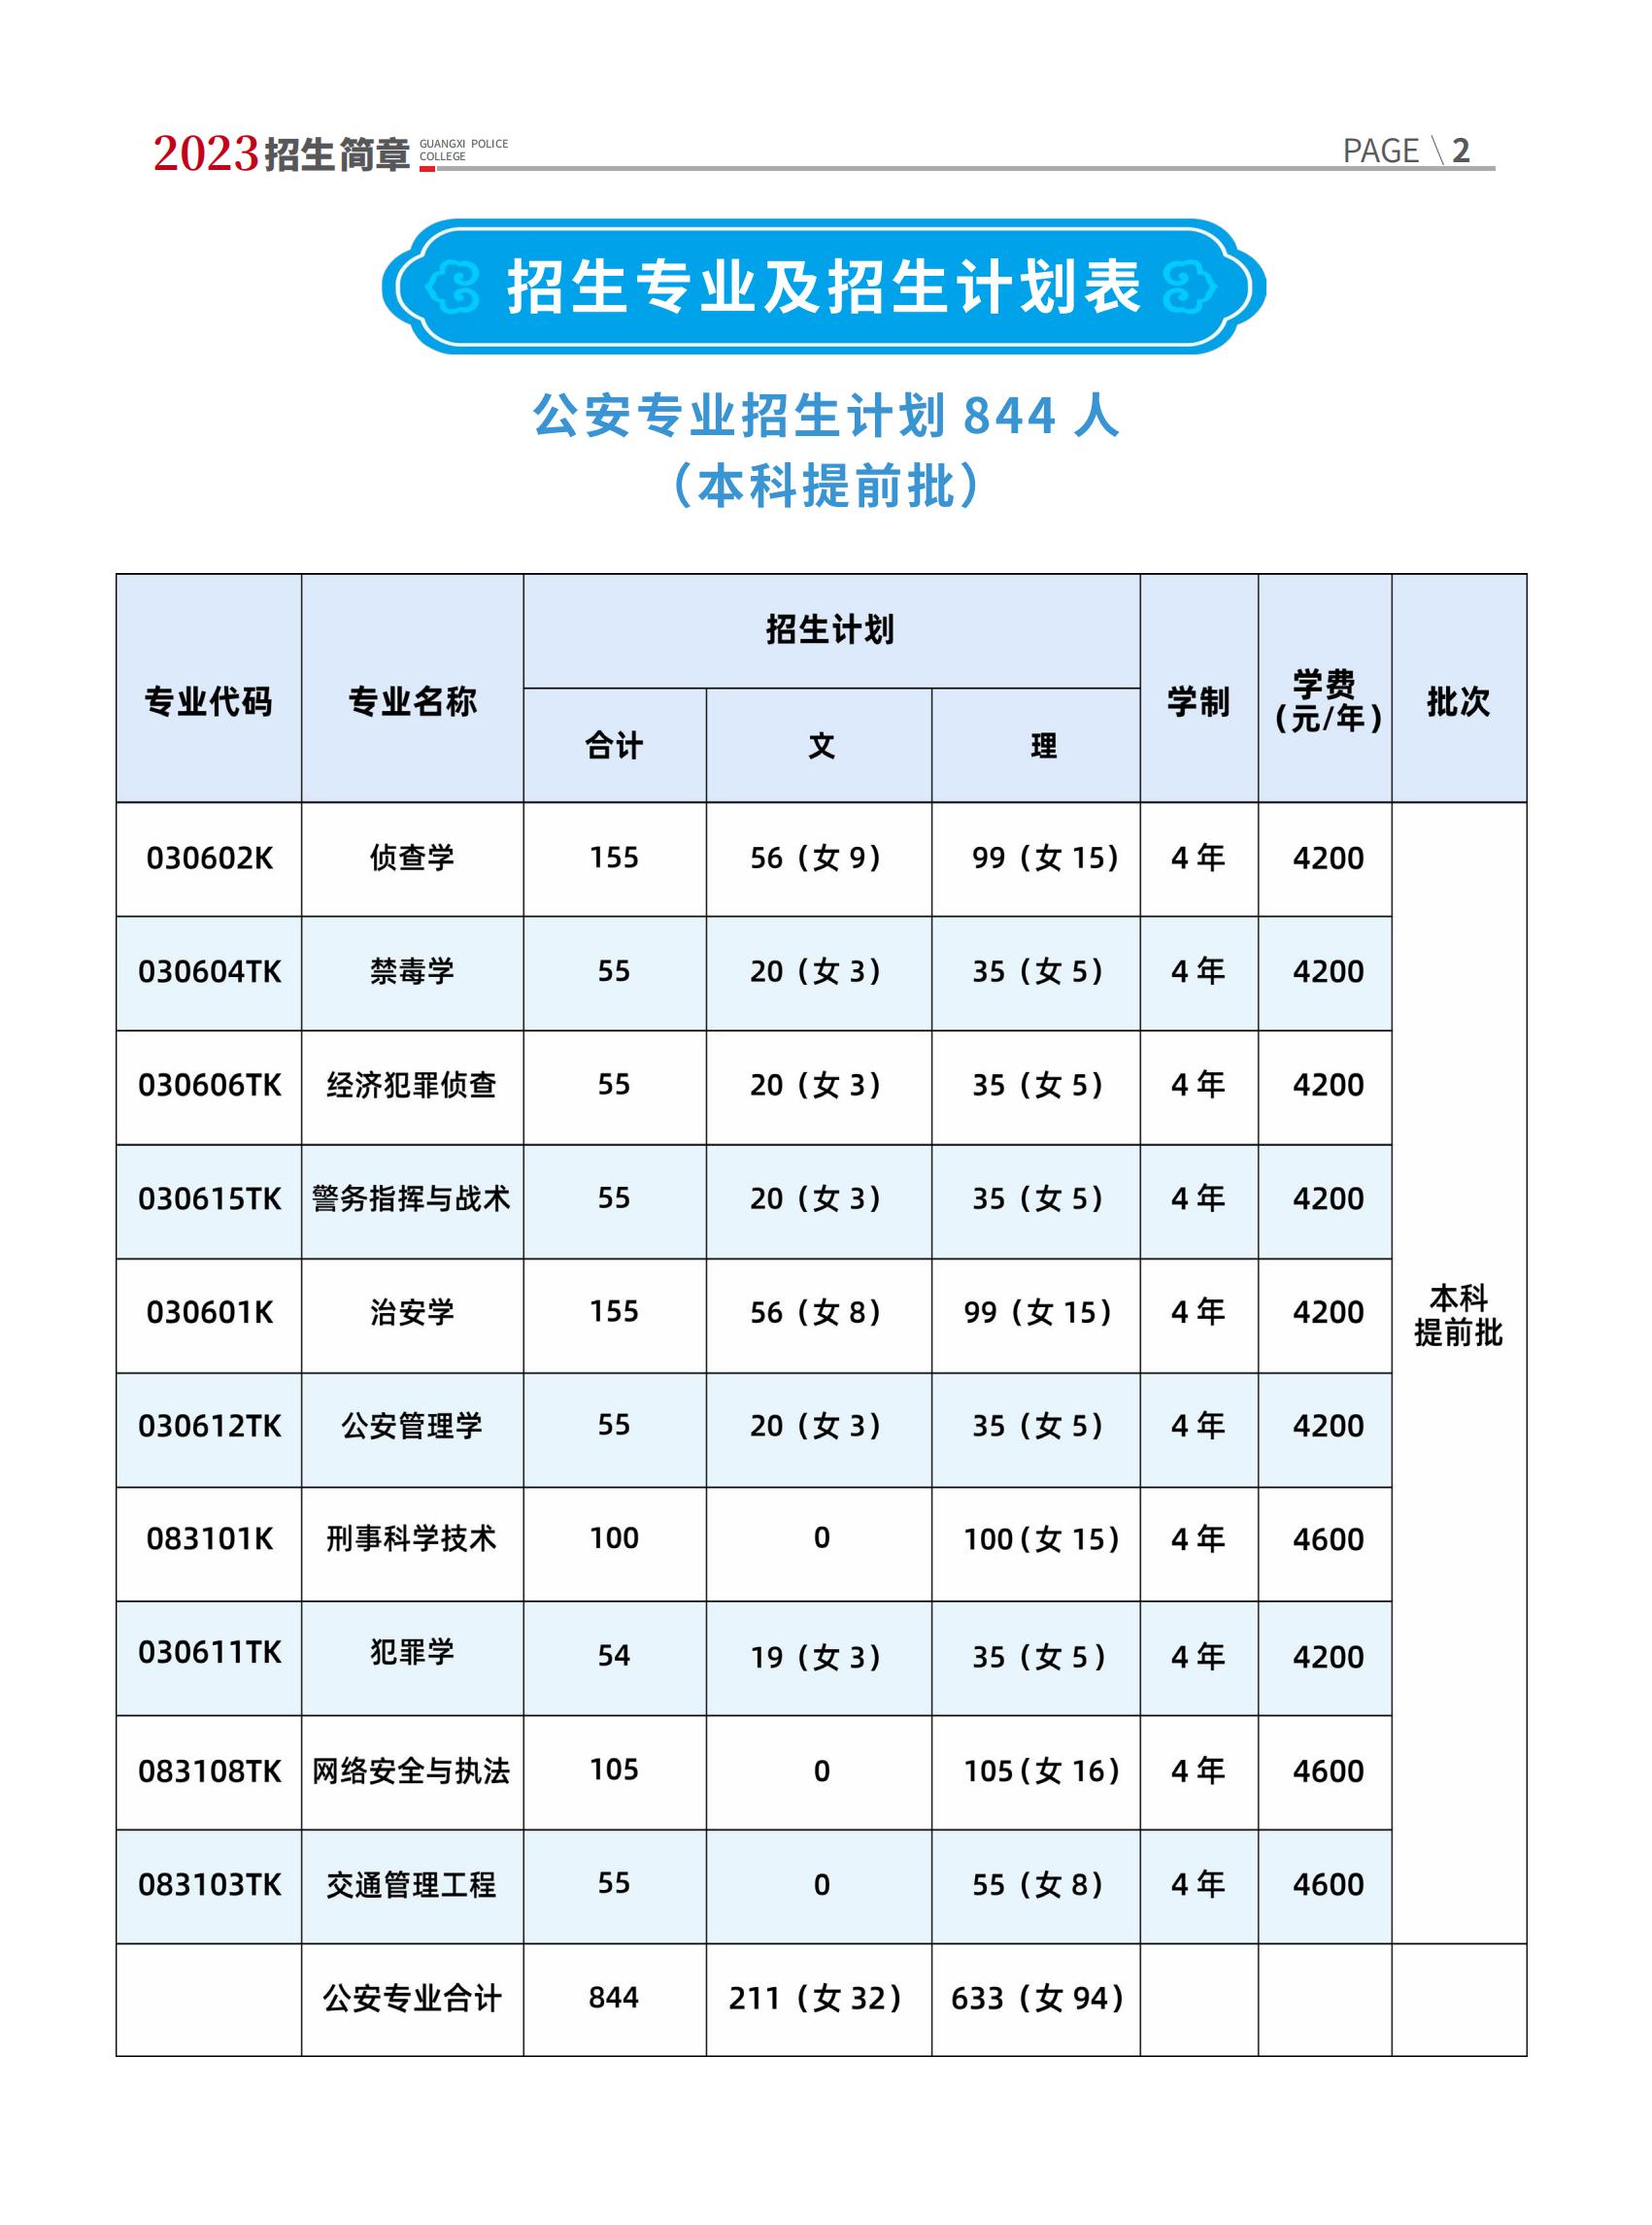 广西警察学院2023年招生简章及各省招生计划人数